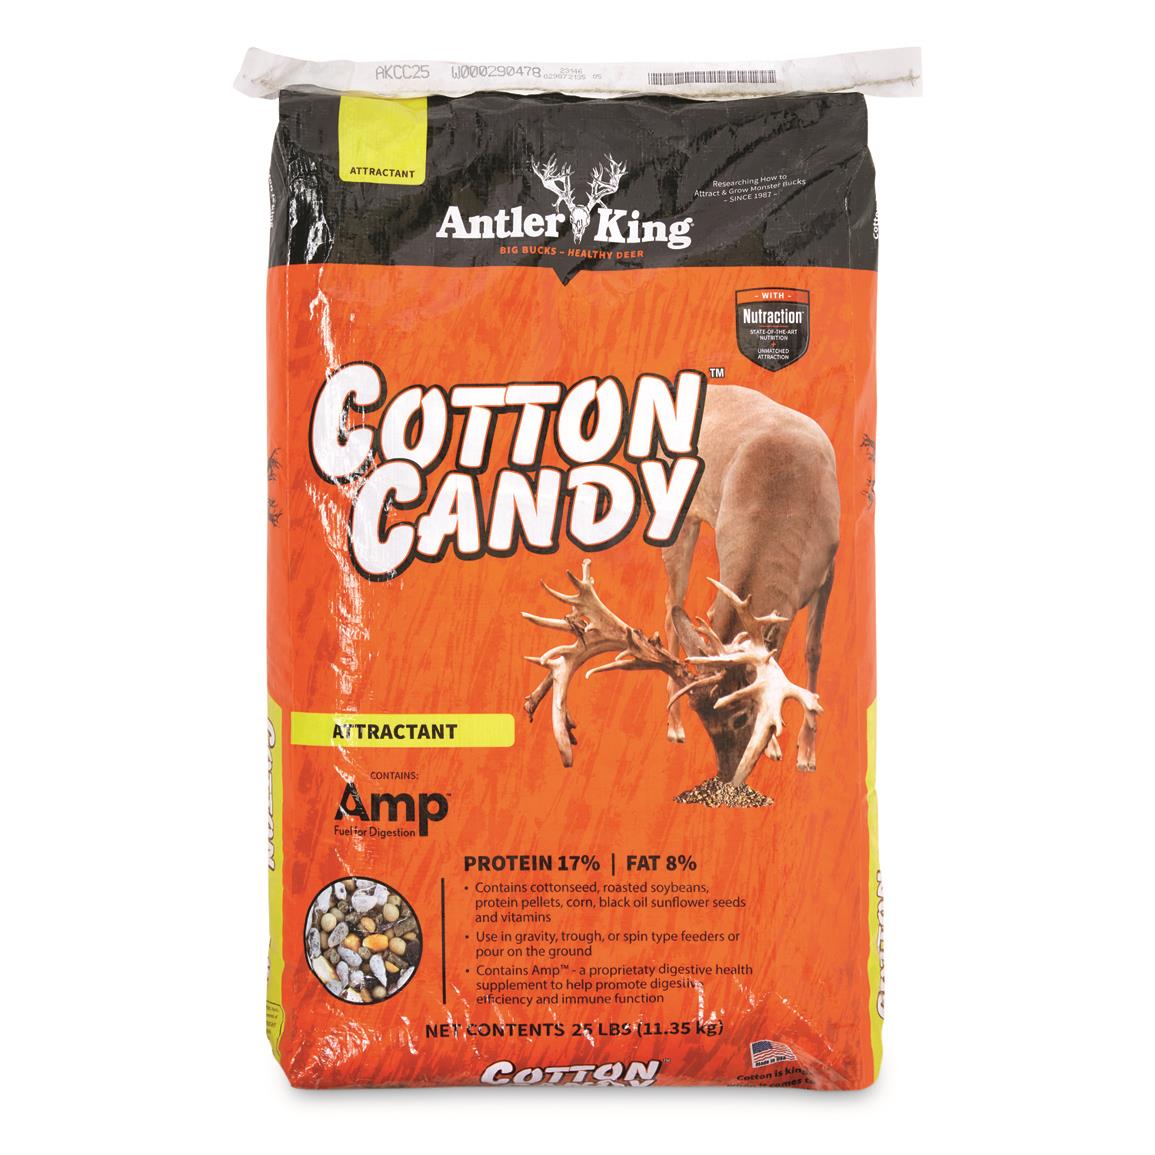 Antler King Cotton Candy Deer Attractant, 25-lb. Bag